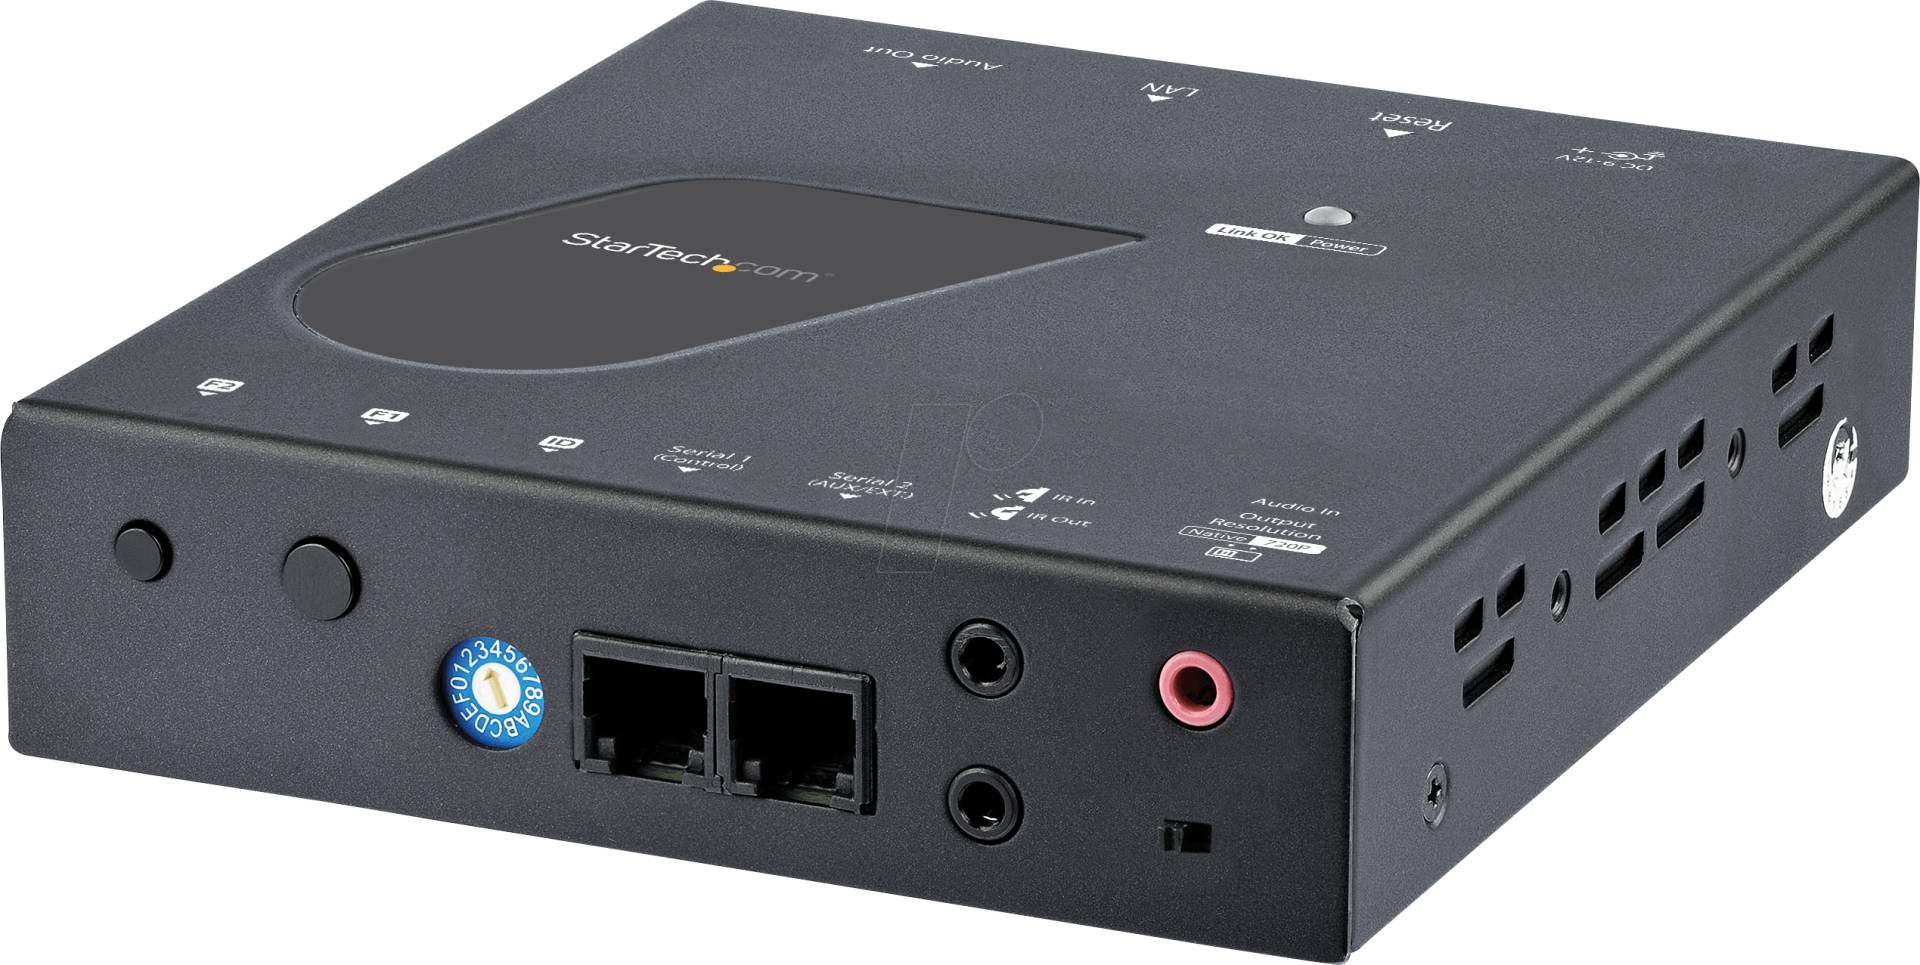 ST ST12MHDLAN2R - Empfänger - HDMI über Ethernet - 1080p von StarTech.com